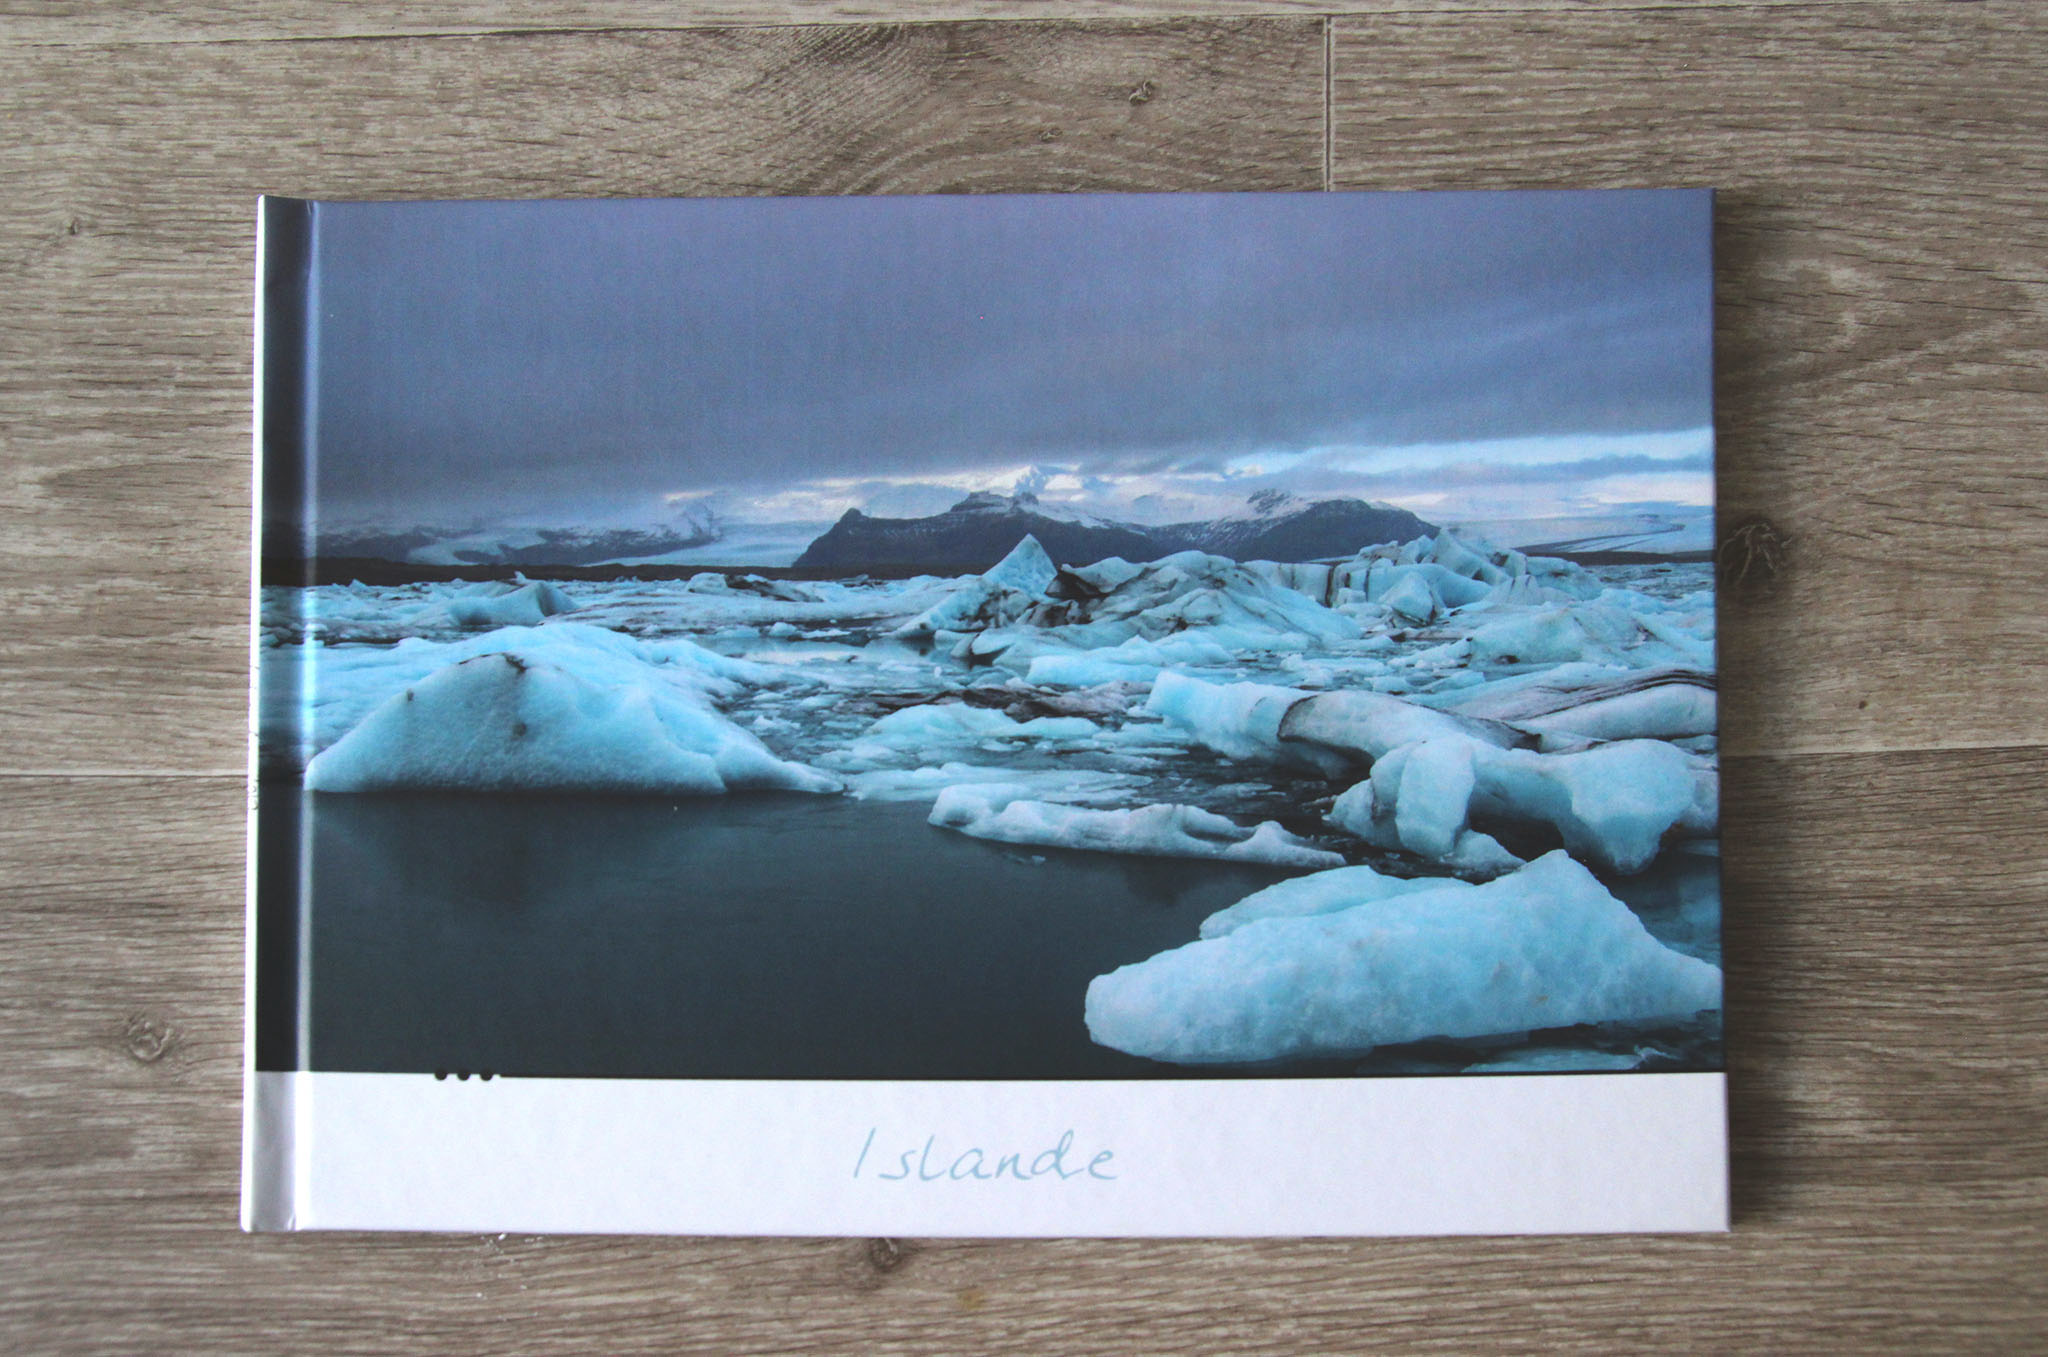 Un de mes livres photos sur l'Islande crée via PhotoInPress